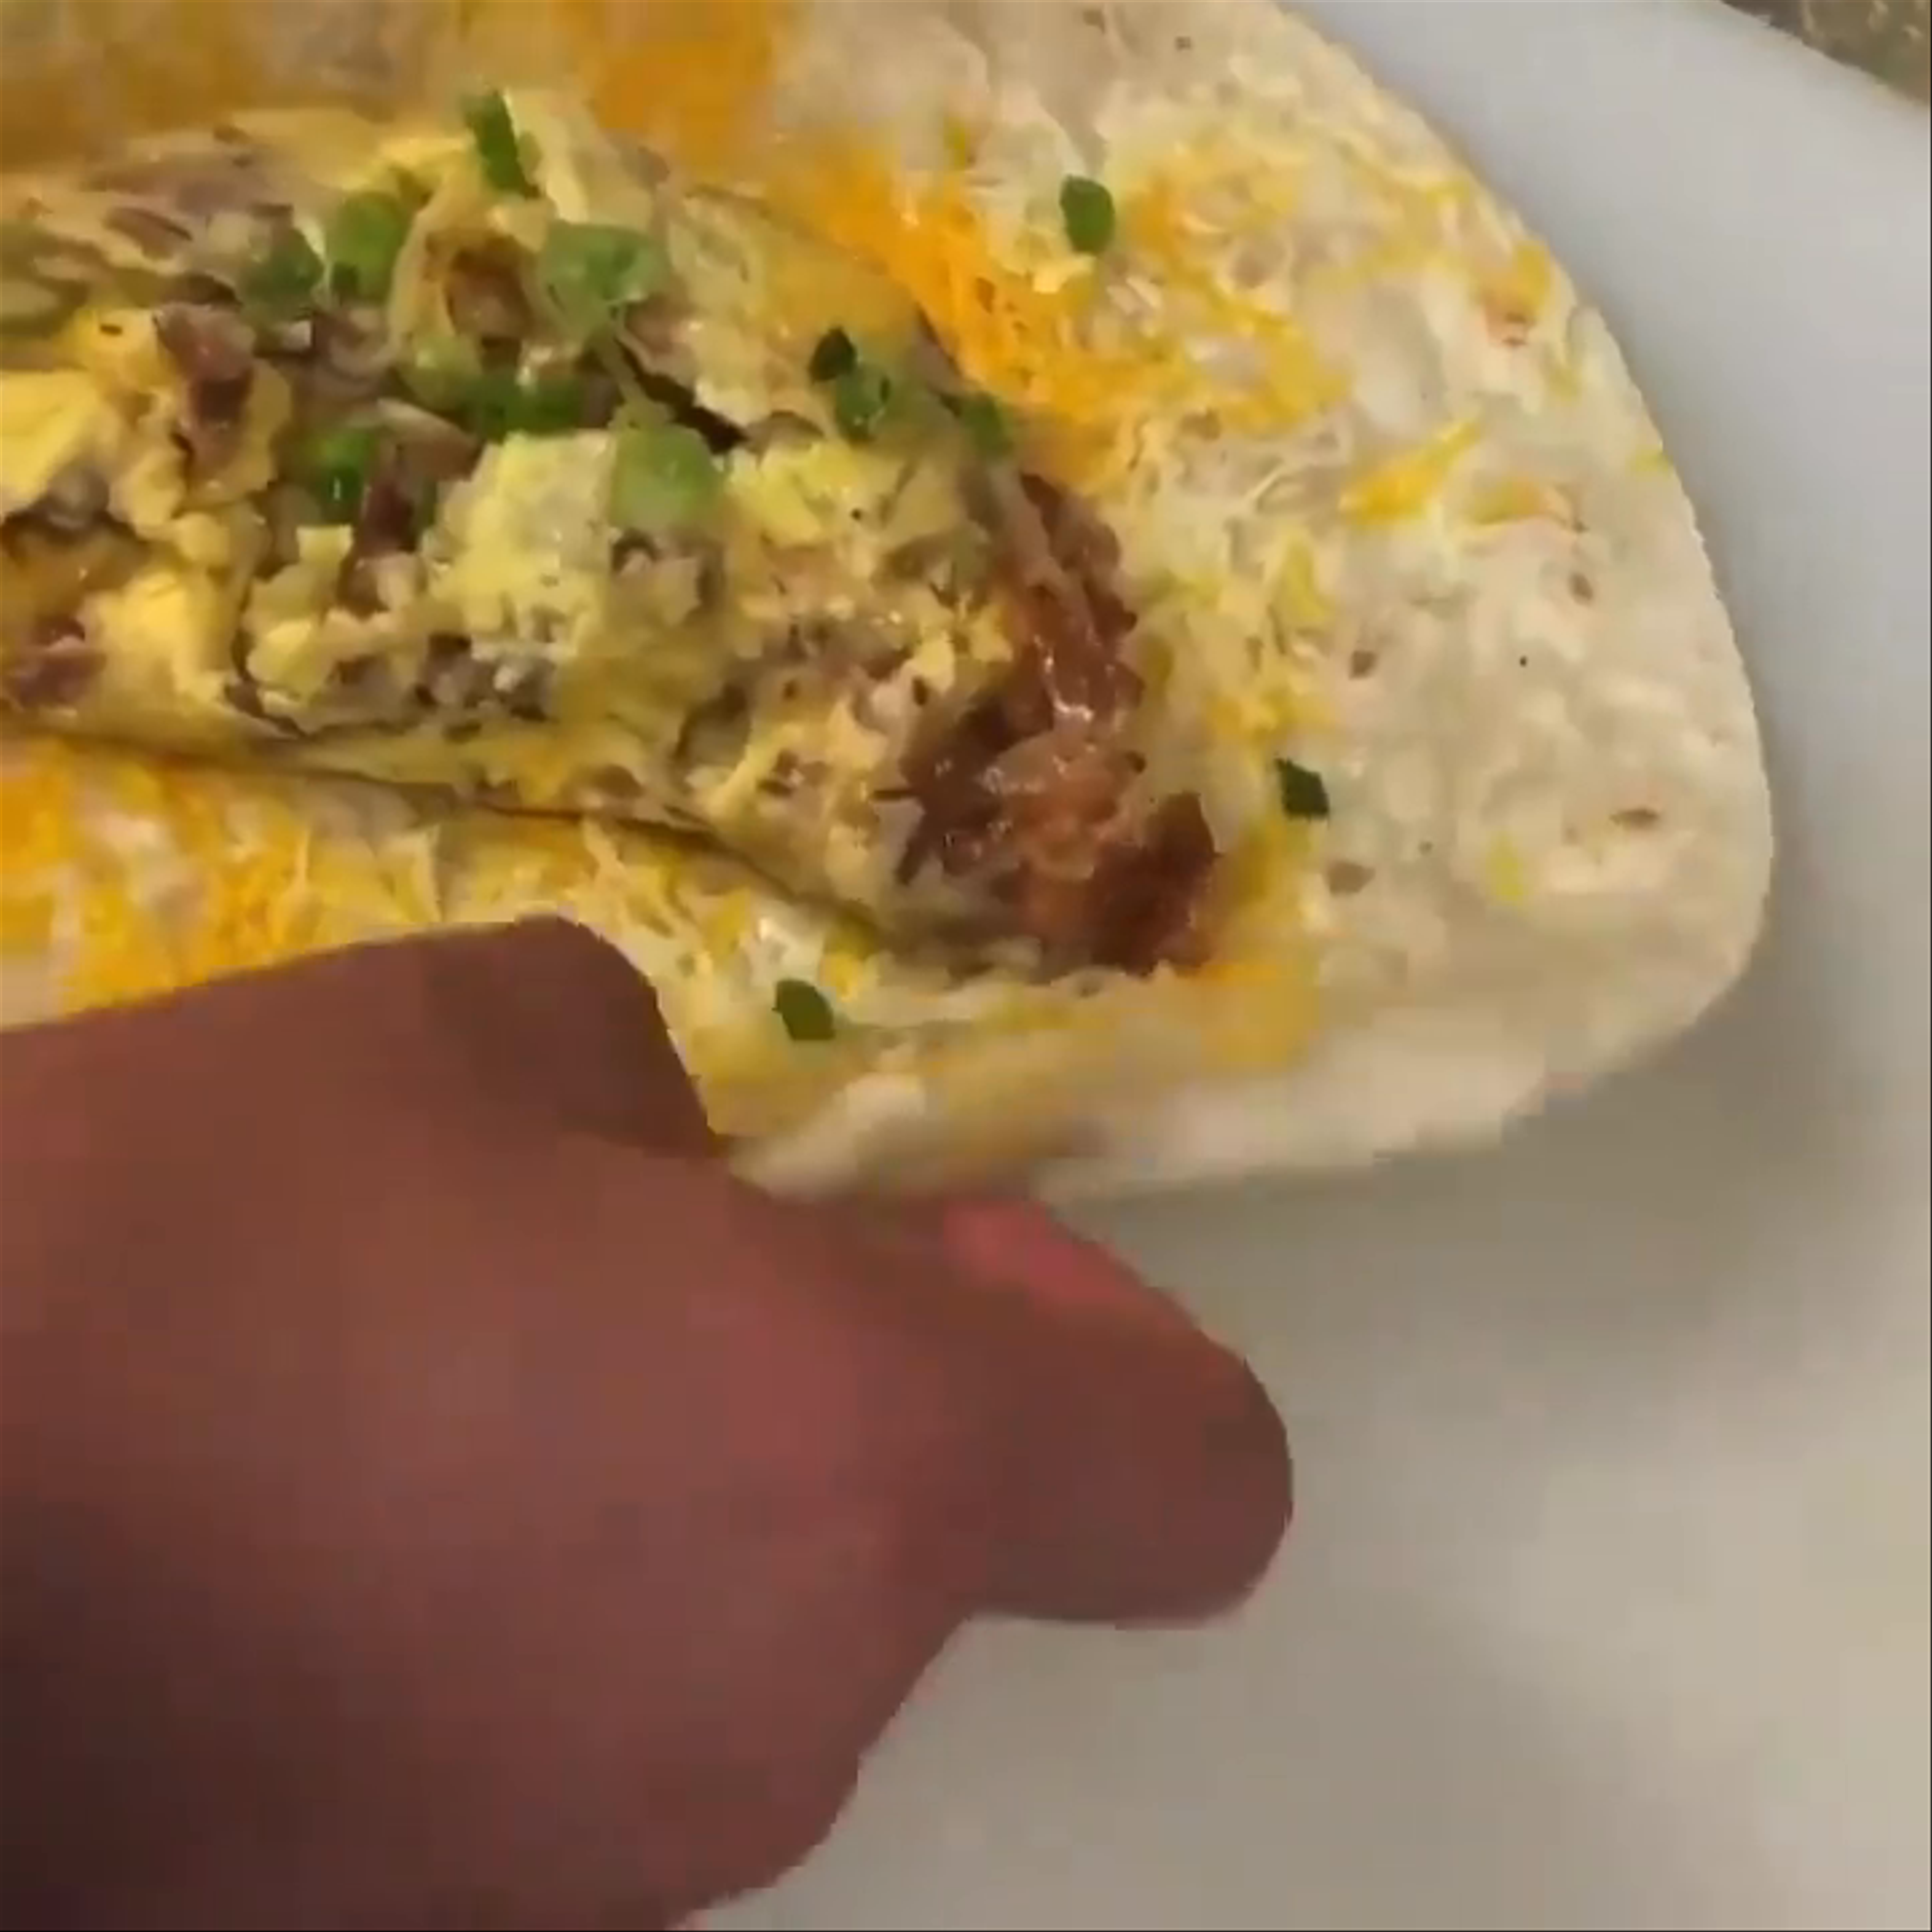 Great Big Burrito dish at EAT in North Hollywood